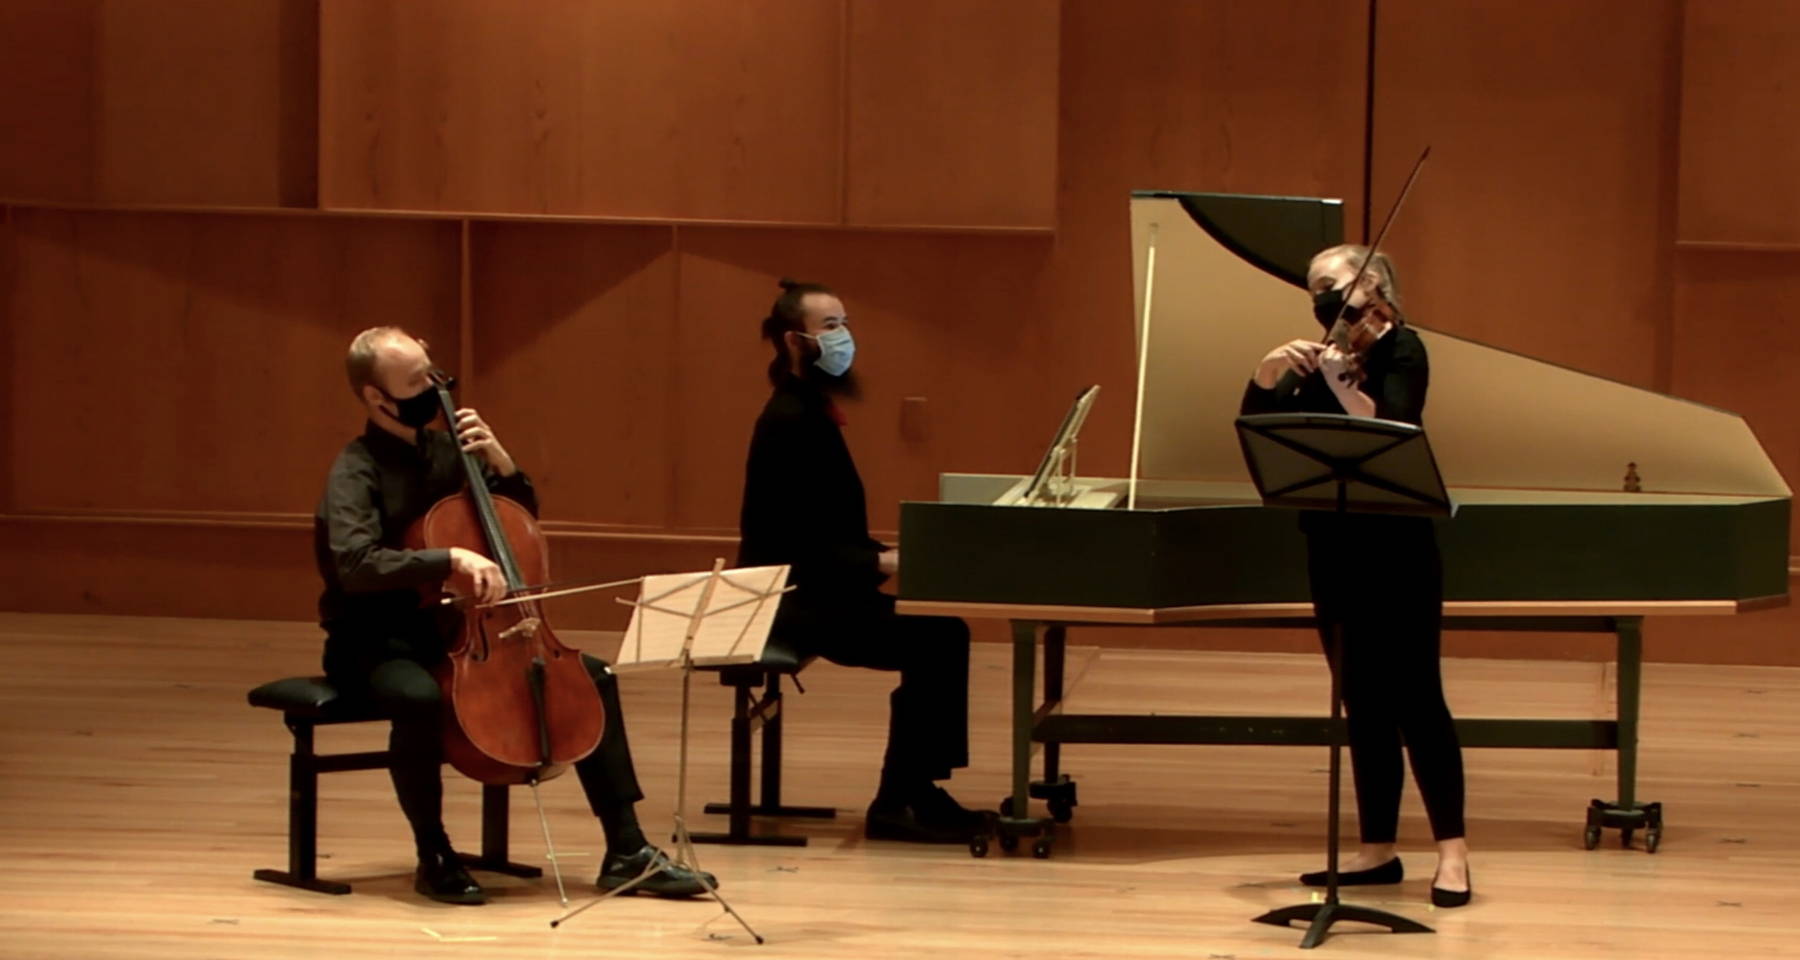 Telemann Harpsichord Viola & Cello Trio, Bach Cello Suite 4 and a Hobgoblin